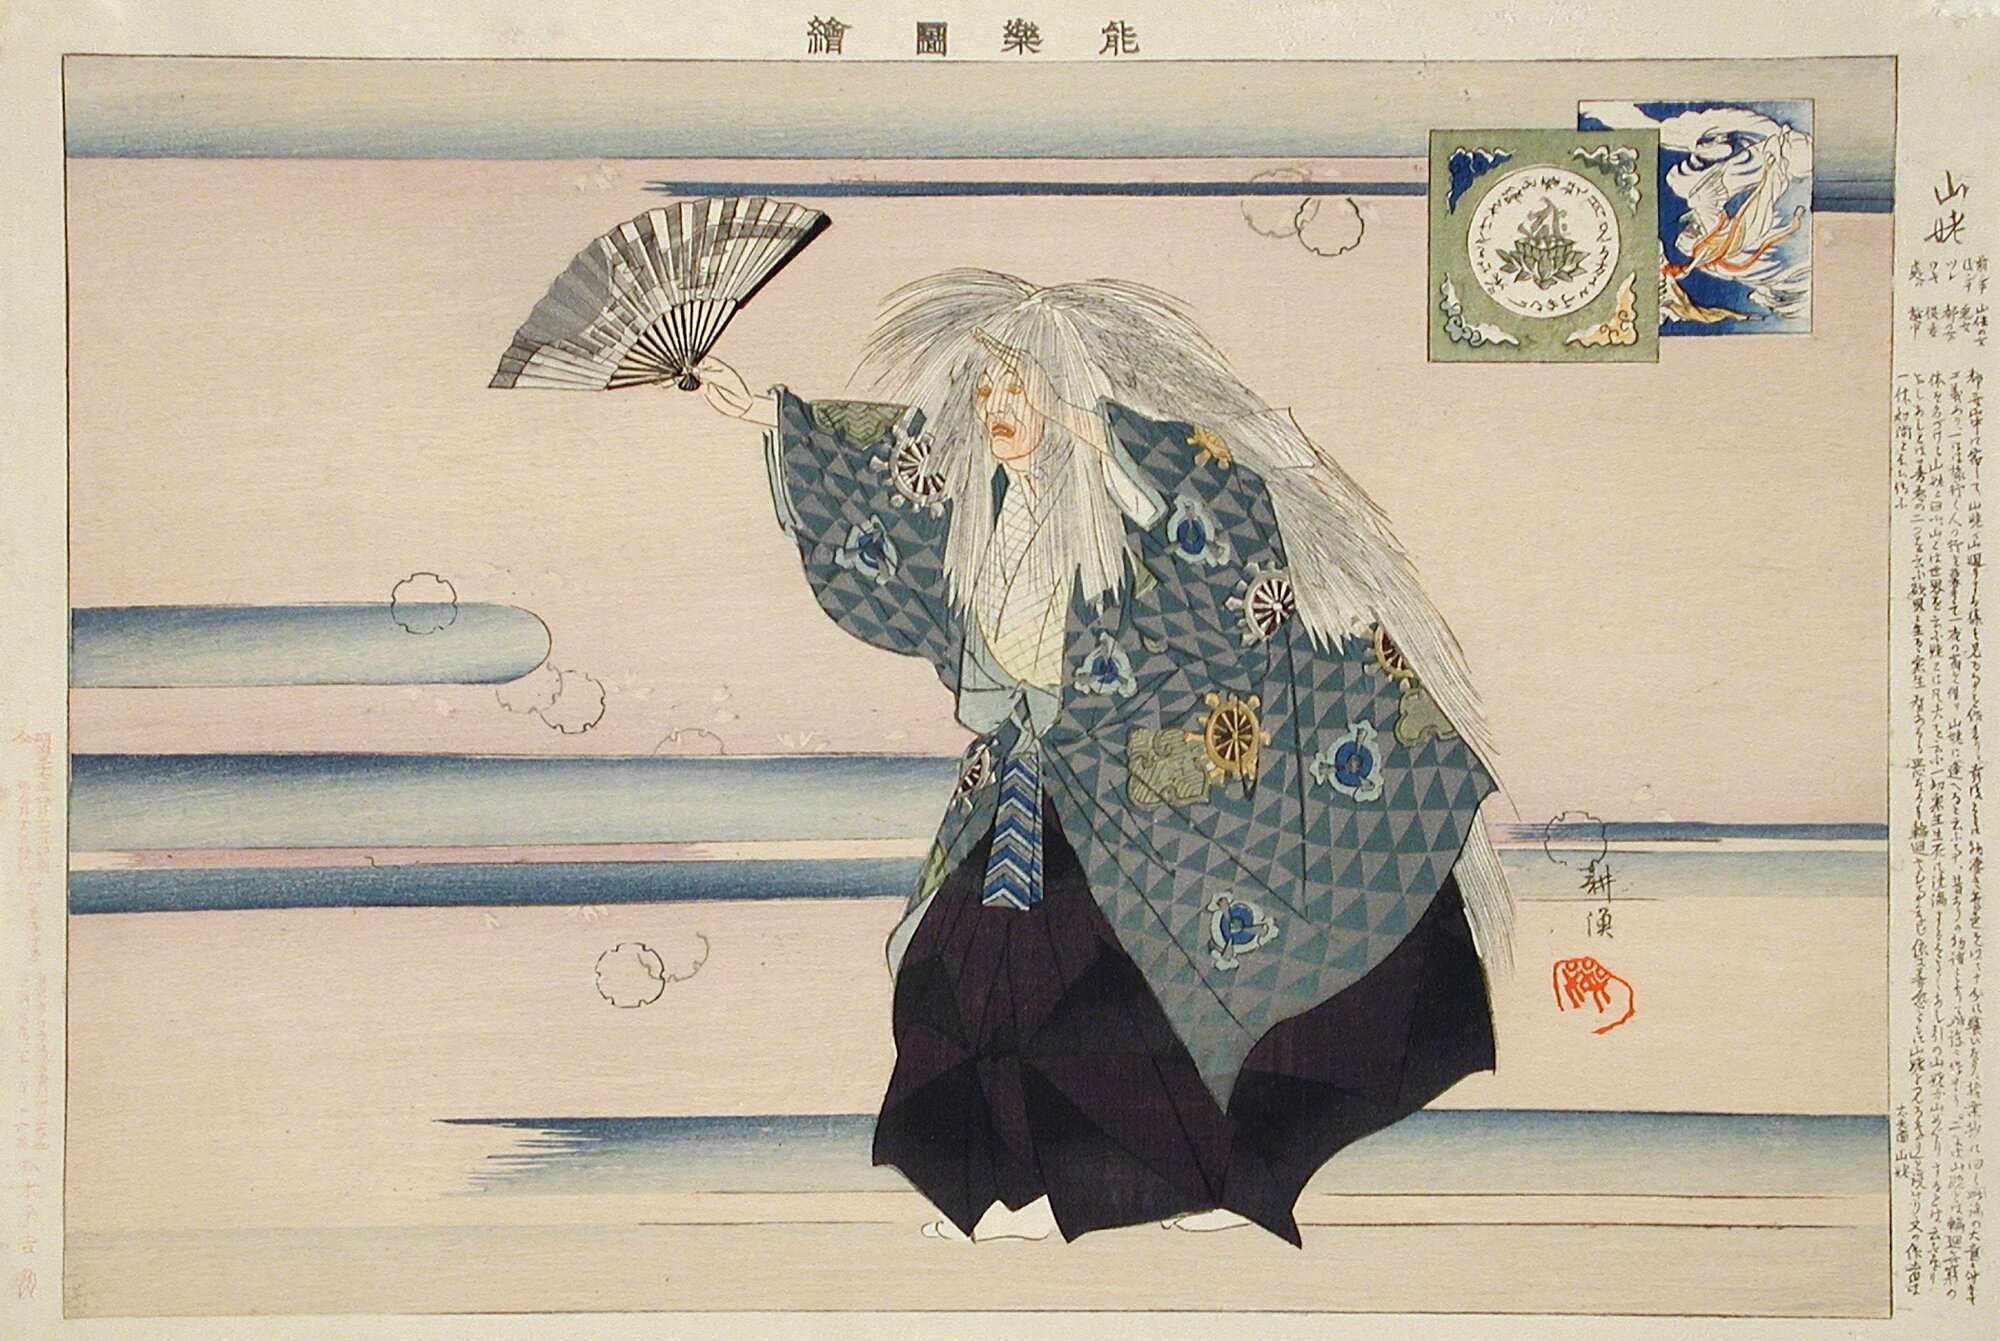 Jelenet a "Yamauba" (Yamamba) című Noh-darabból, augusztus 20., 19. század vége-20. század eleje. Sorozat: Noh-dráma vázlatai. Alkotó: Tsukioka Kogyo. (Fotó: Heritage Art/Heritage Images via Getty Images)